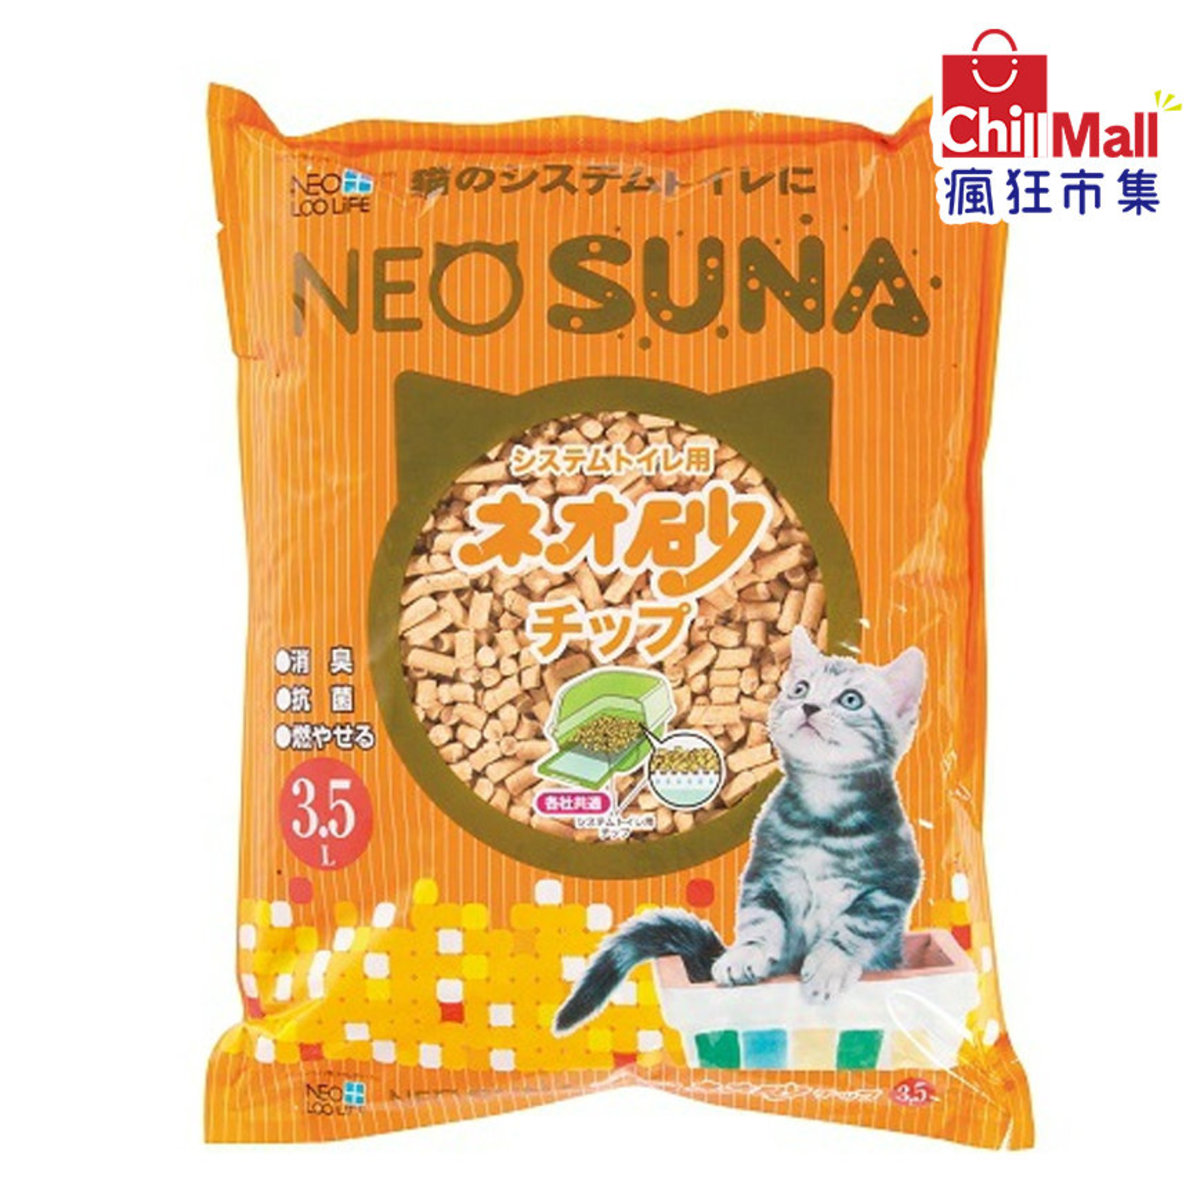 【木貓砂】日本NEO SUNA柏木砂 3.5L (橙色) 6206550